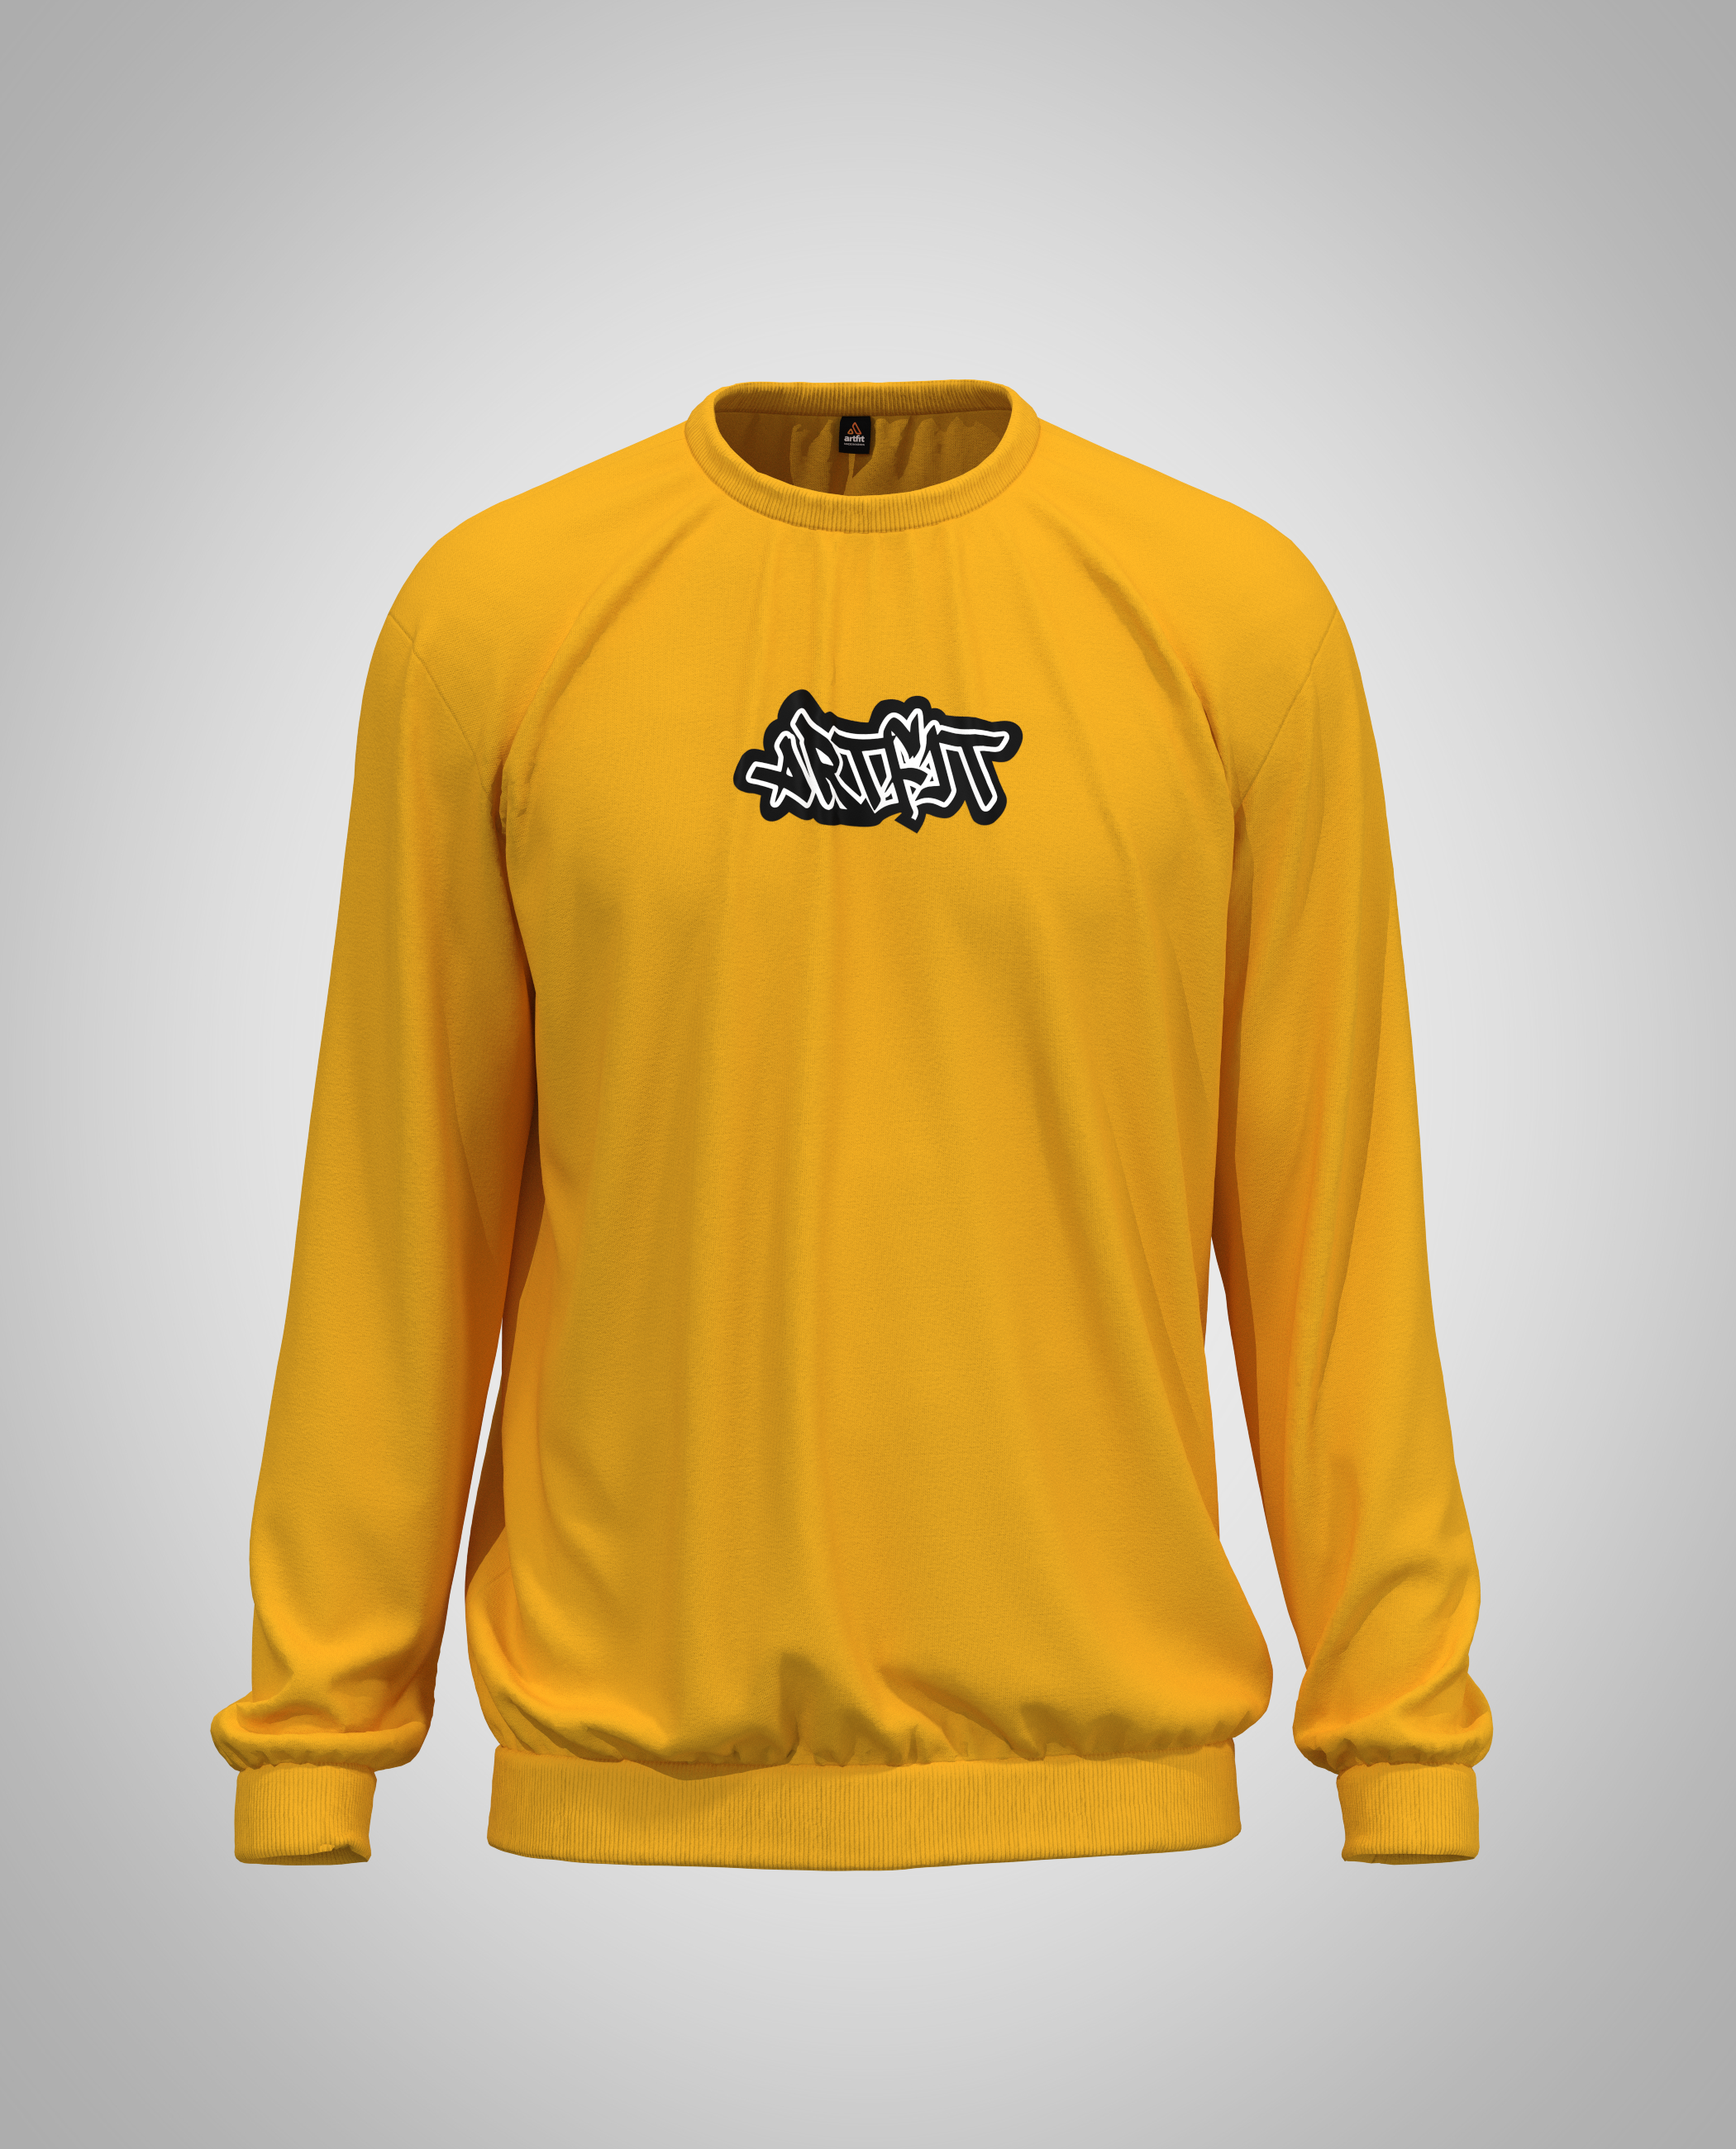 Mustard Yellow Sweatshirt(Heavy Fabric)